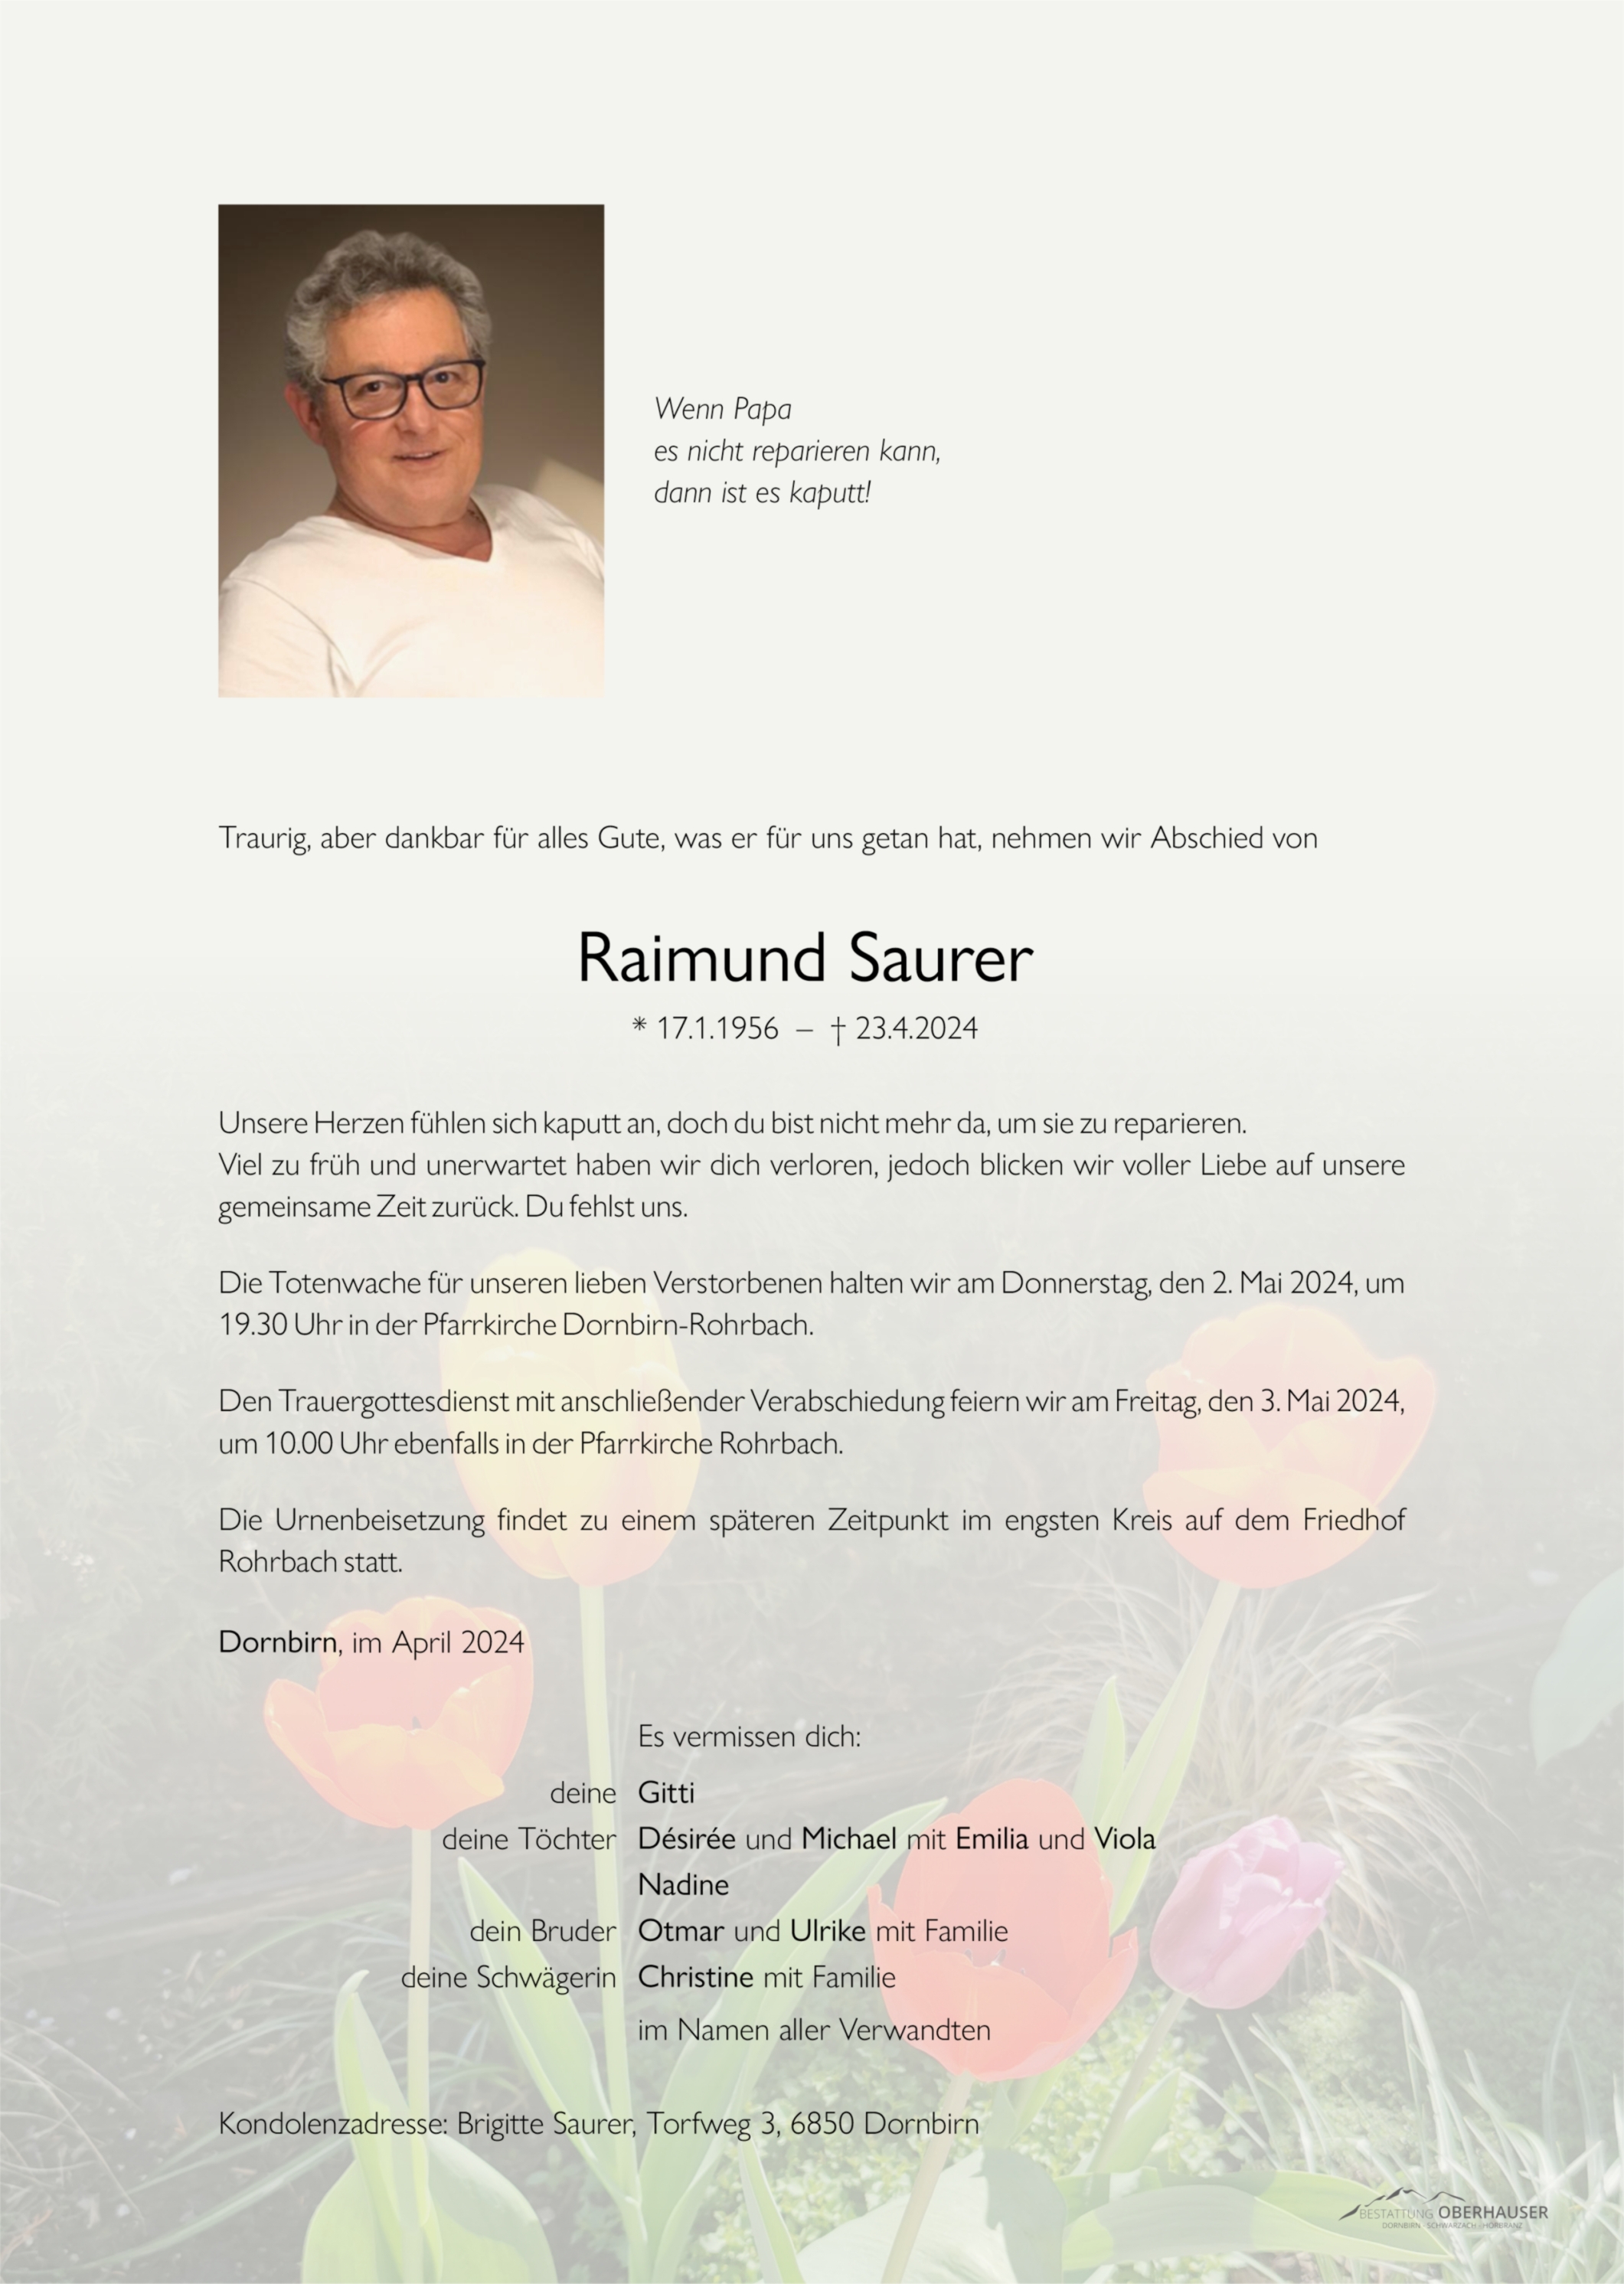 Raimund Saurer